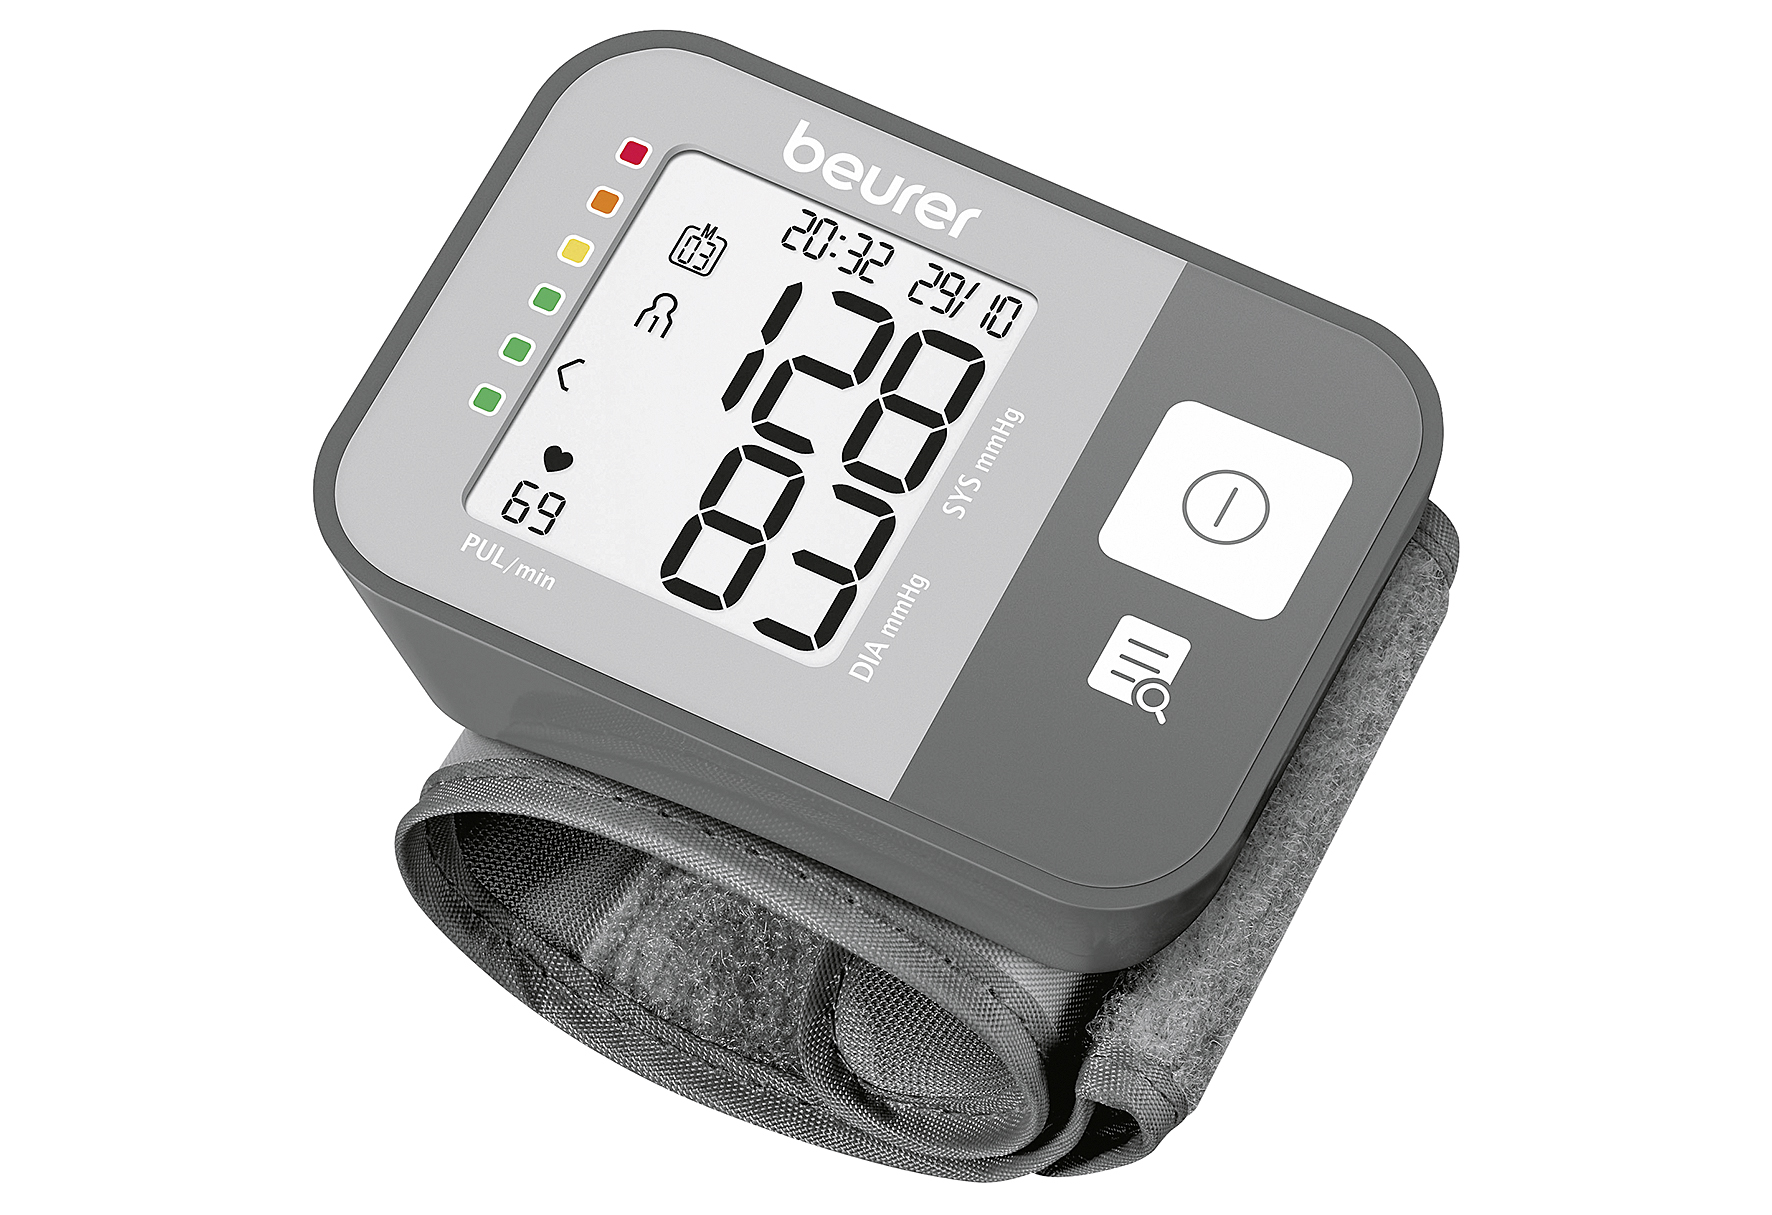 Handgelenk-Blutdruckmessgerät BC 27